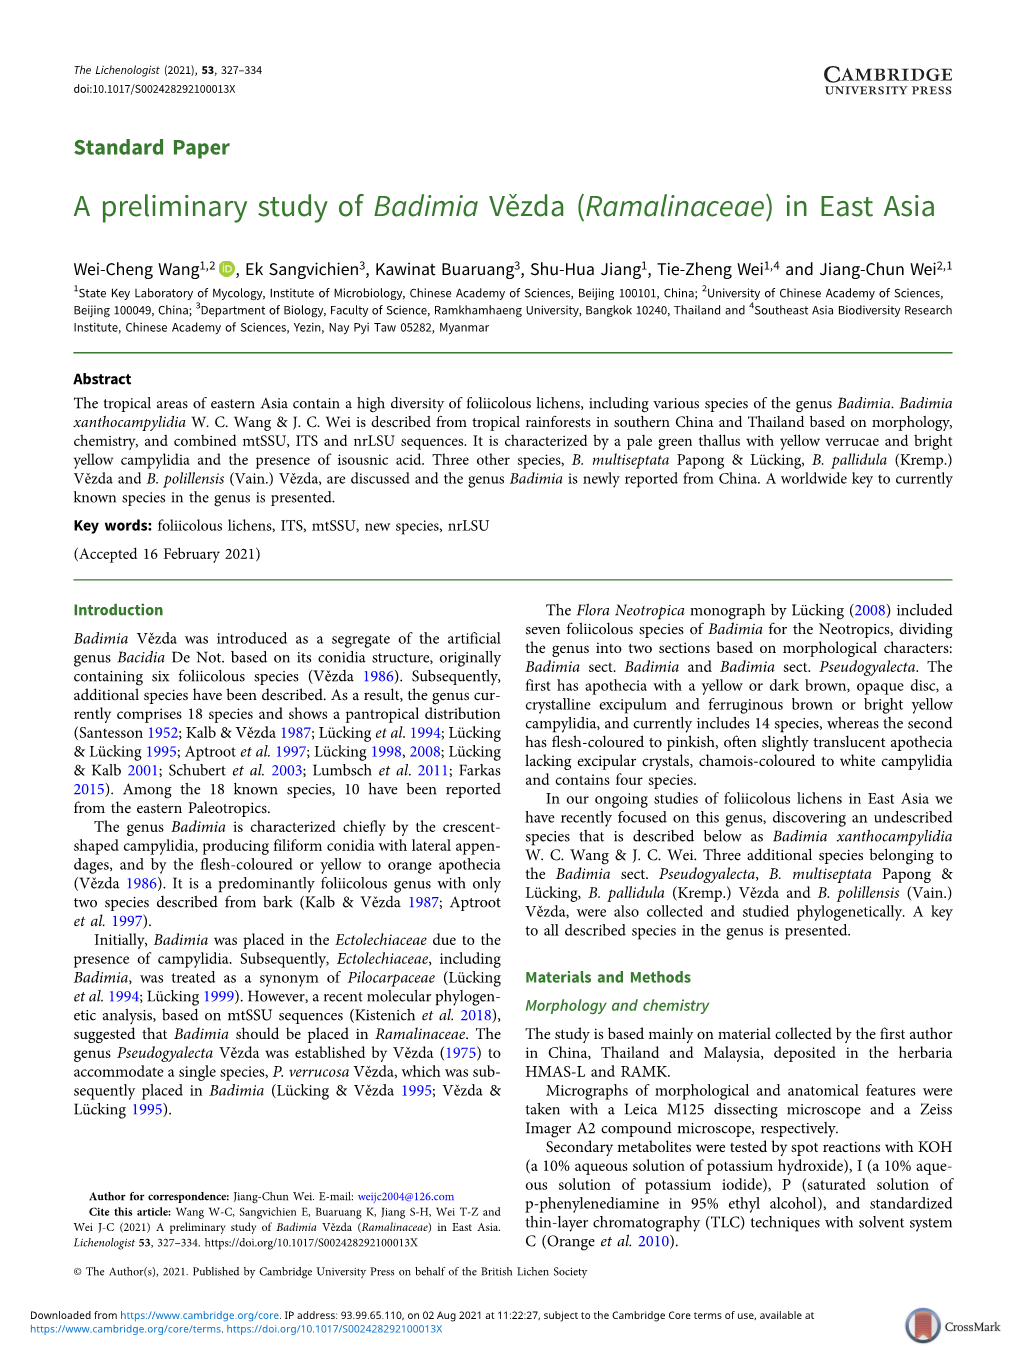 A Preliminary Study of Badimia Vězda (Ramalinaceae) in East Asia